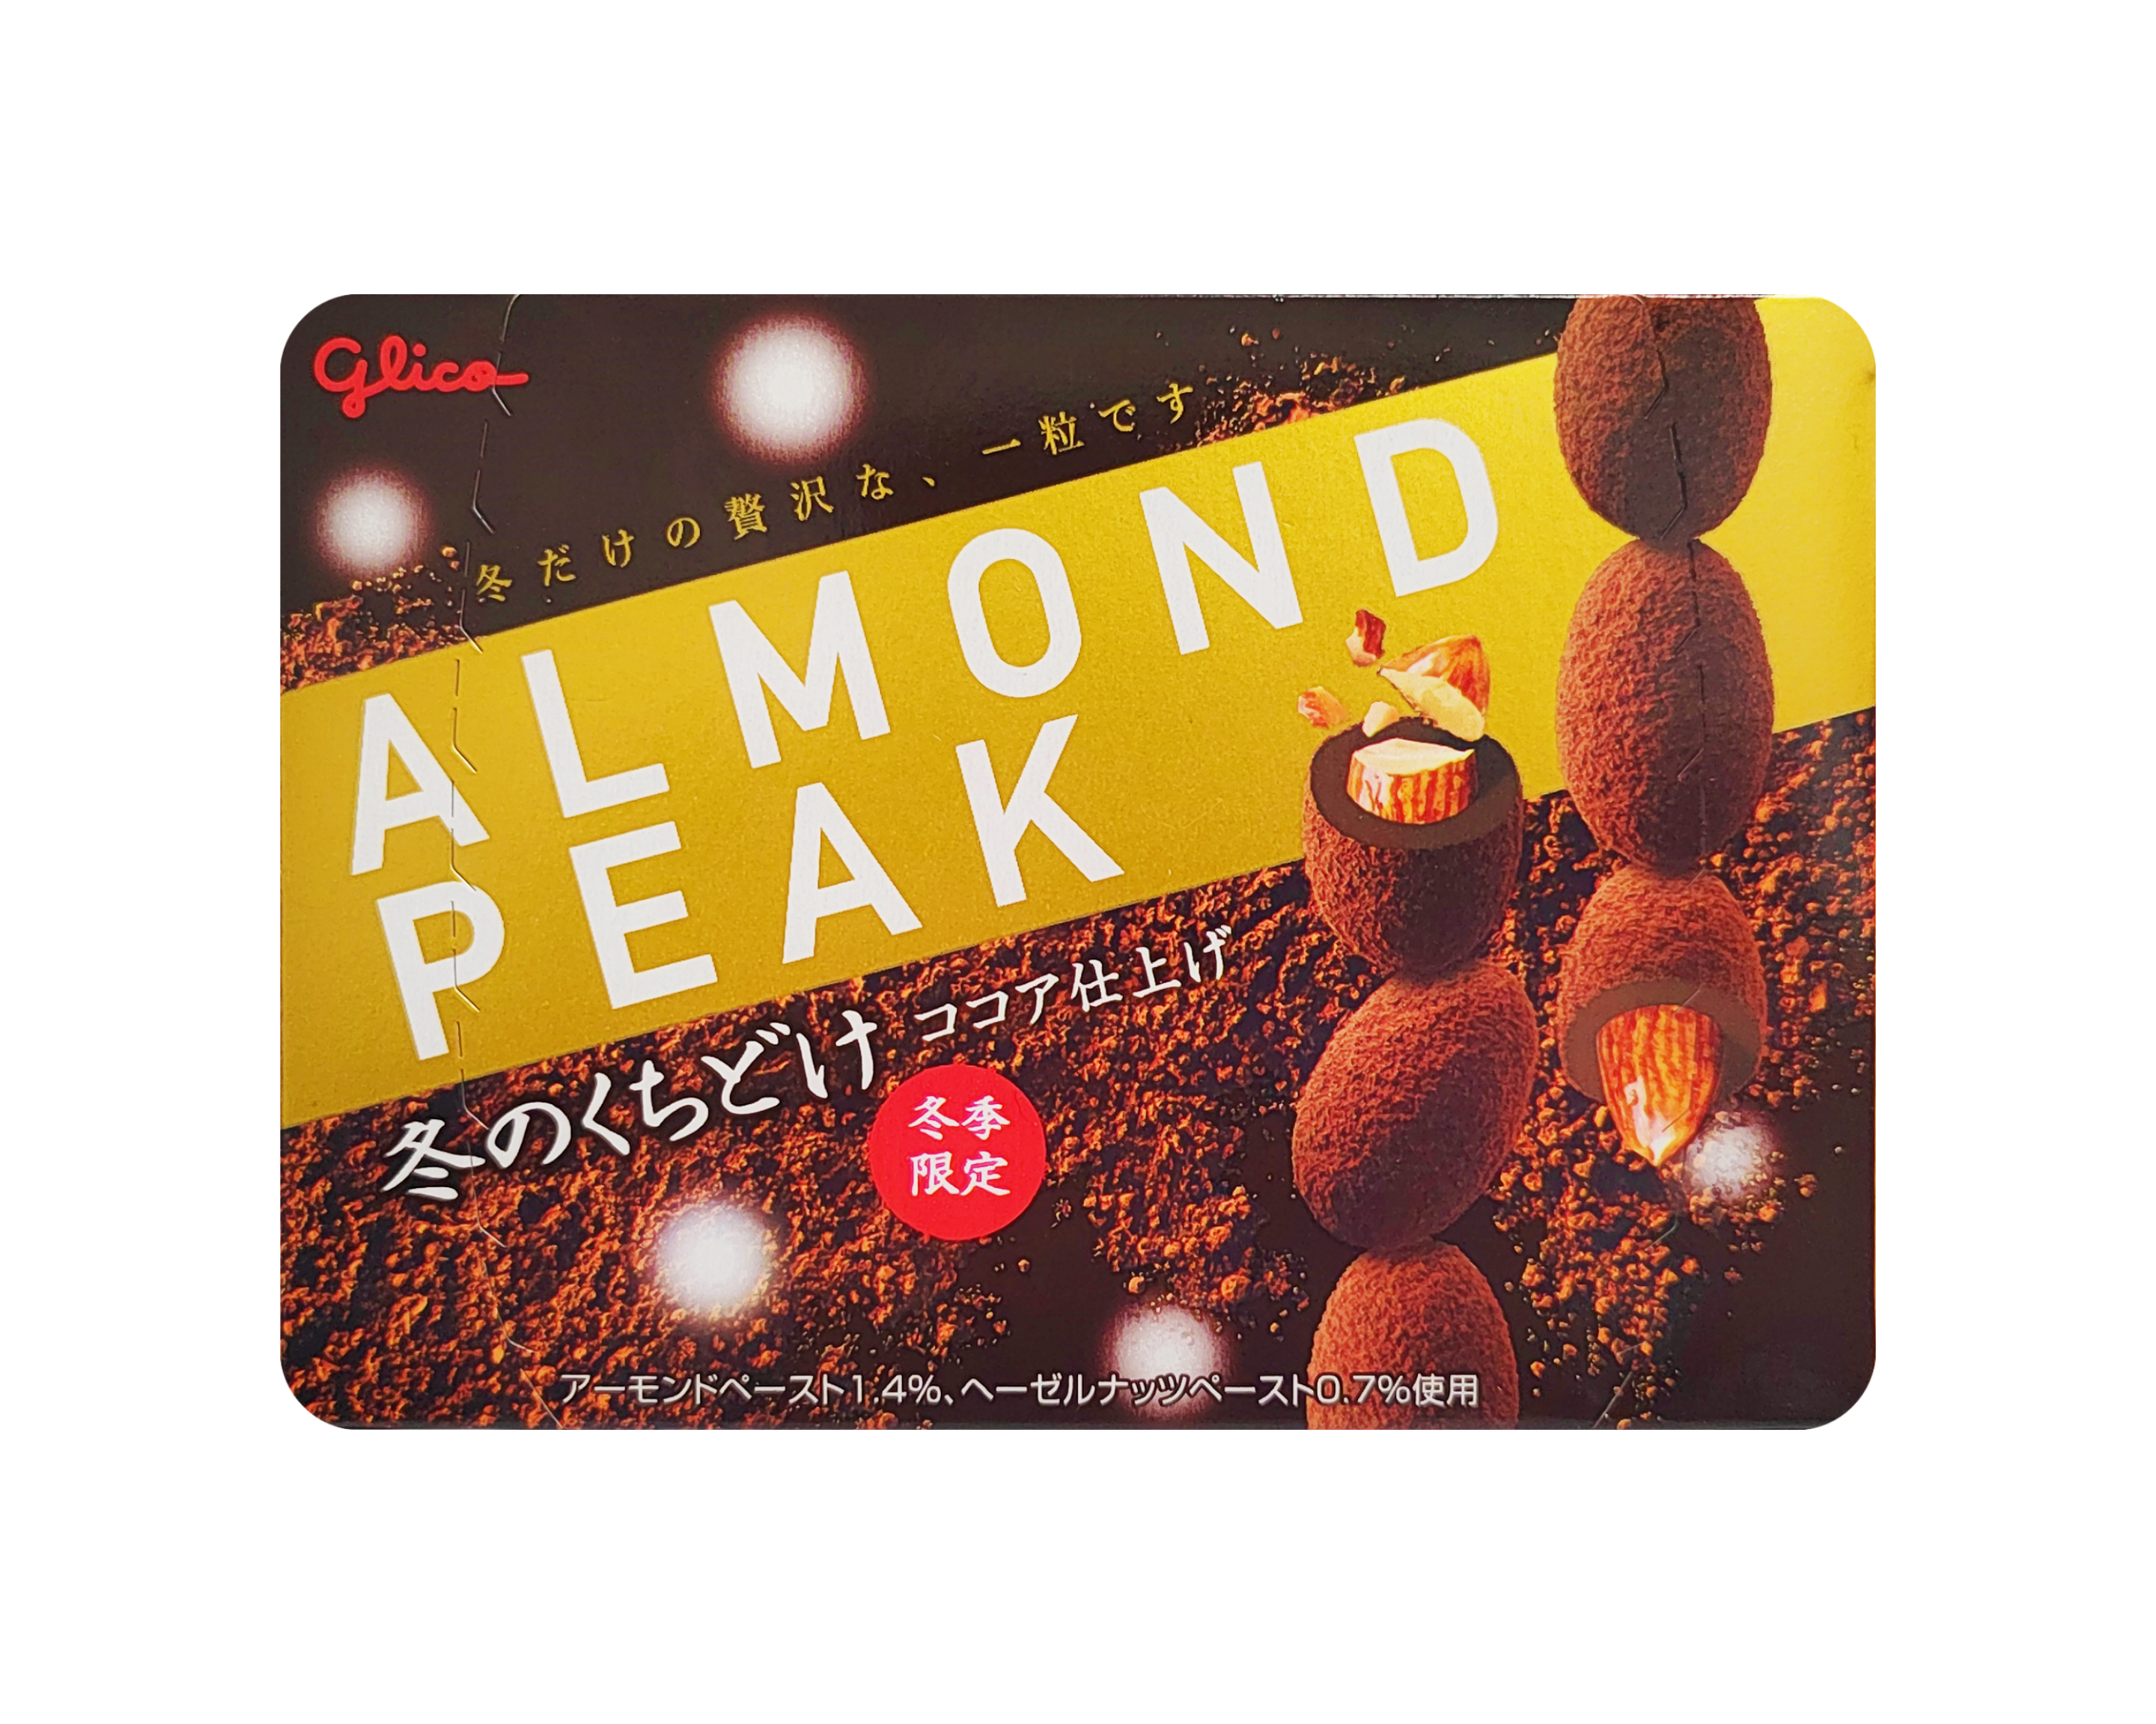 Almond Peak Cocoa 55g Glico Japan